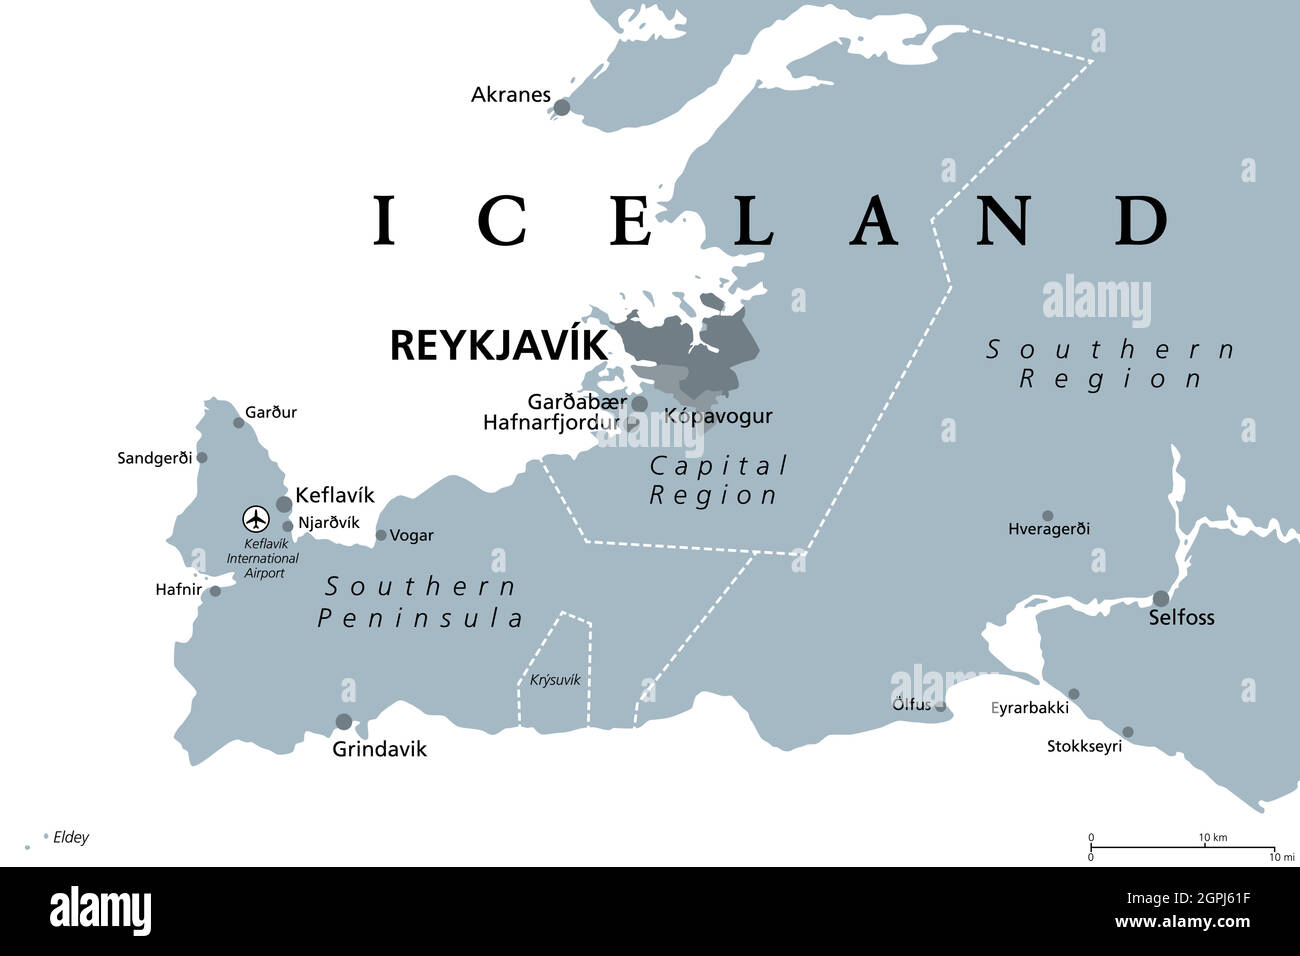 Islande, Reykjavik, région de la capitale et péninsule du Sud, carte politique grise Illustration de Vecteur